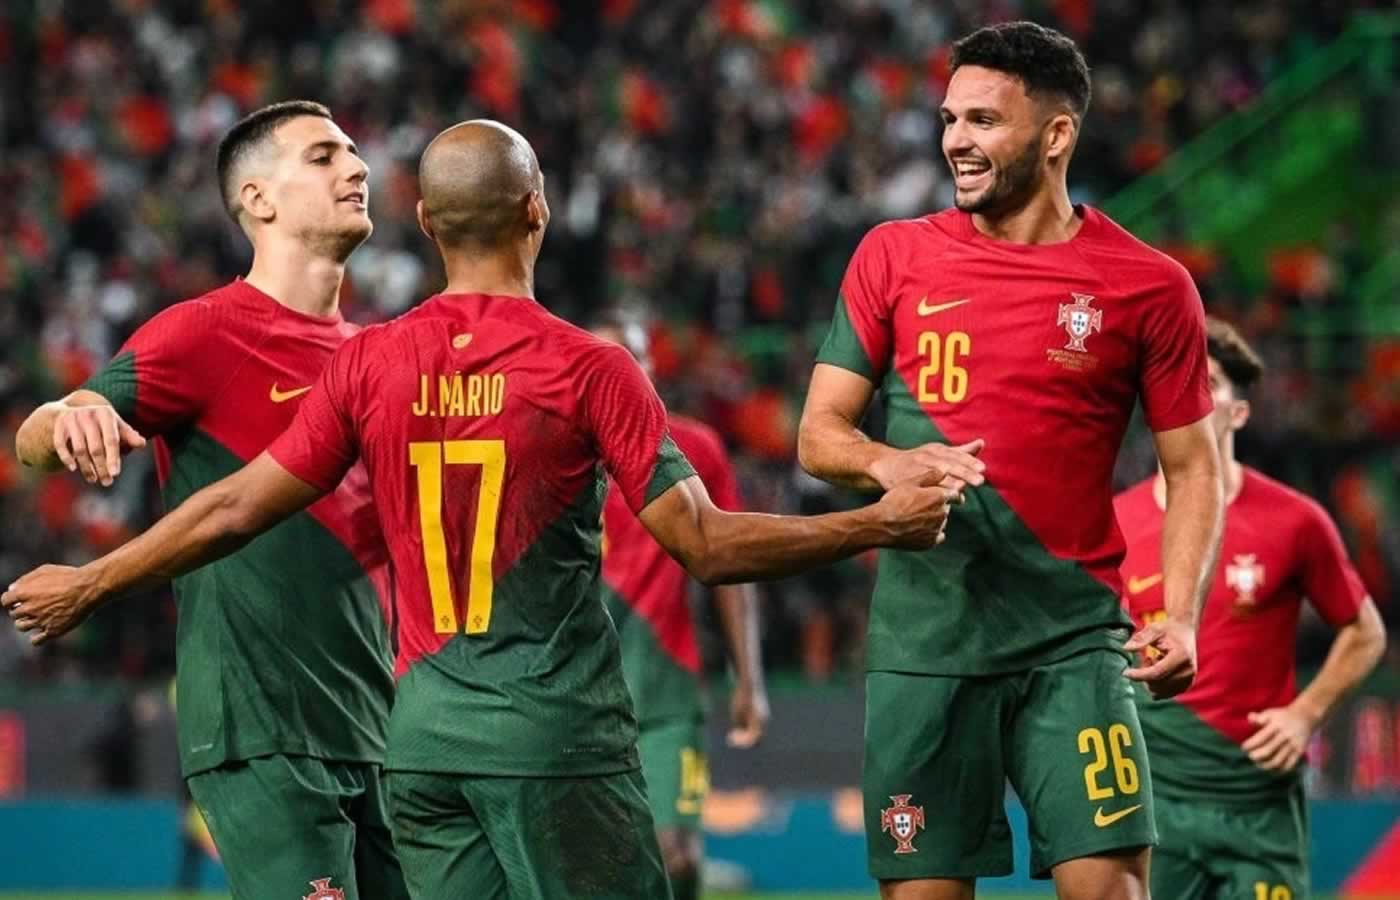 Εύκολο βράδυ είχε η Εθνική ομάδα της Πορτογαλίας απέναντι στη Νιγηρία την οποία και νίκησε με σκορ 4-0 σε φιλική αναμέτρηση που διεξήχθη